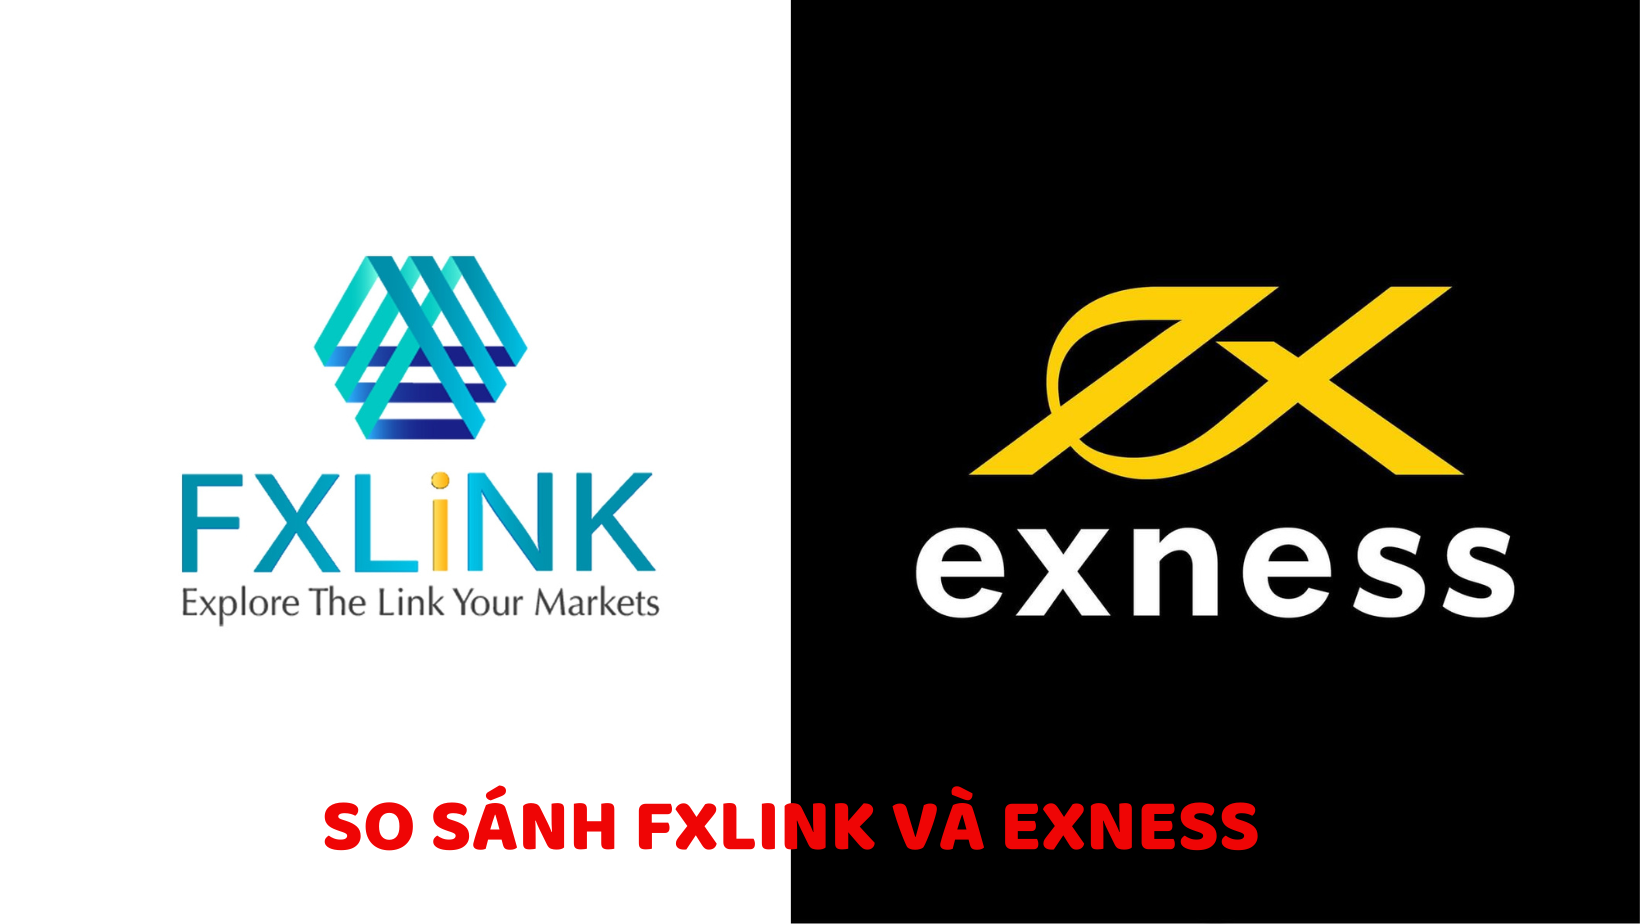 So sánh FXLINK và Exness - Đánh giá chi tiết về ưu nhược điểm và khác biệt